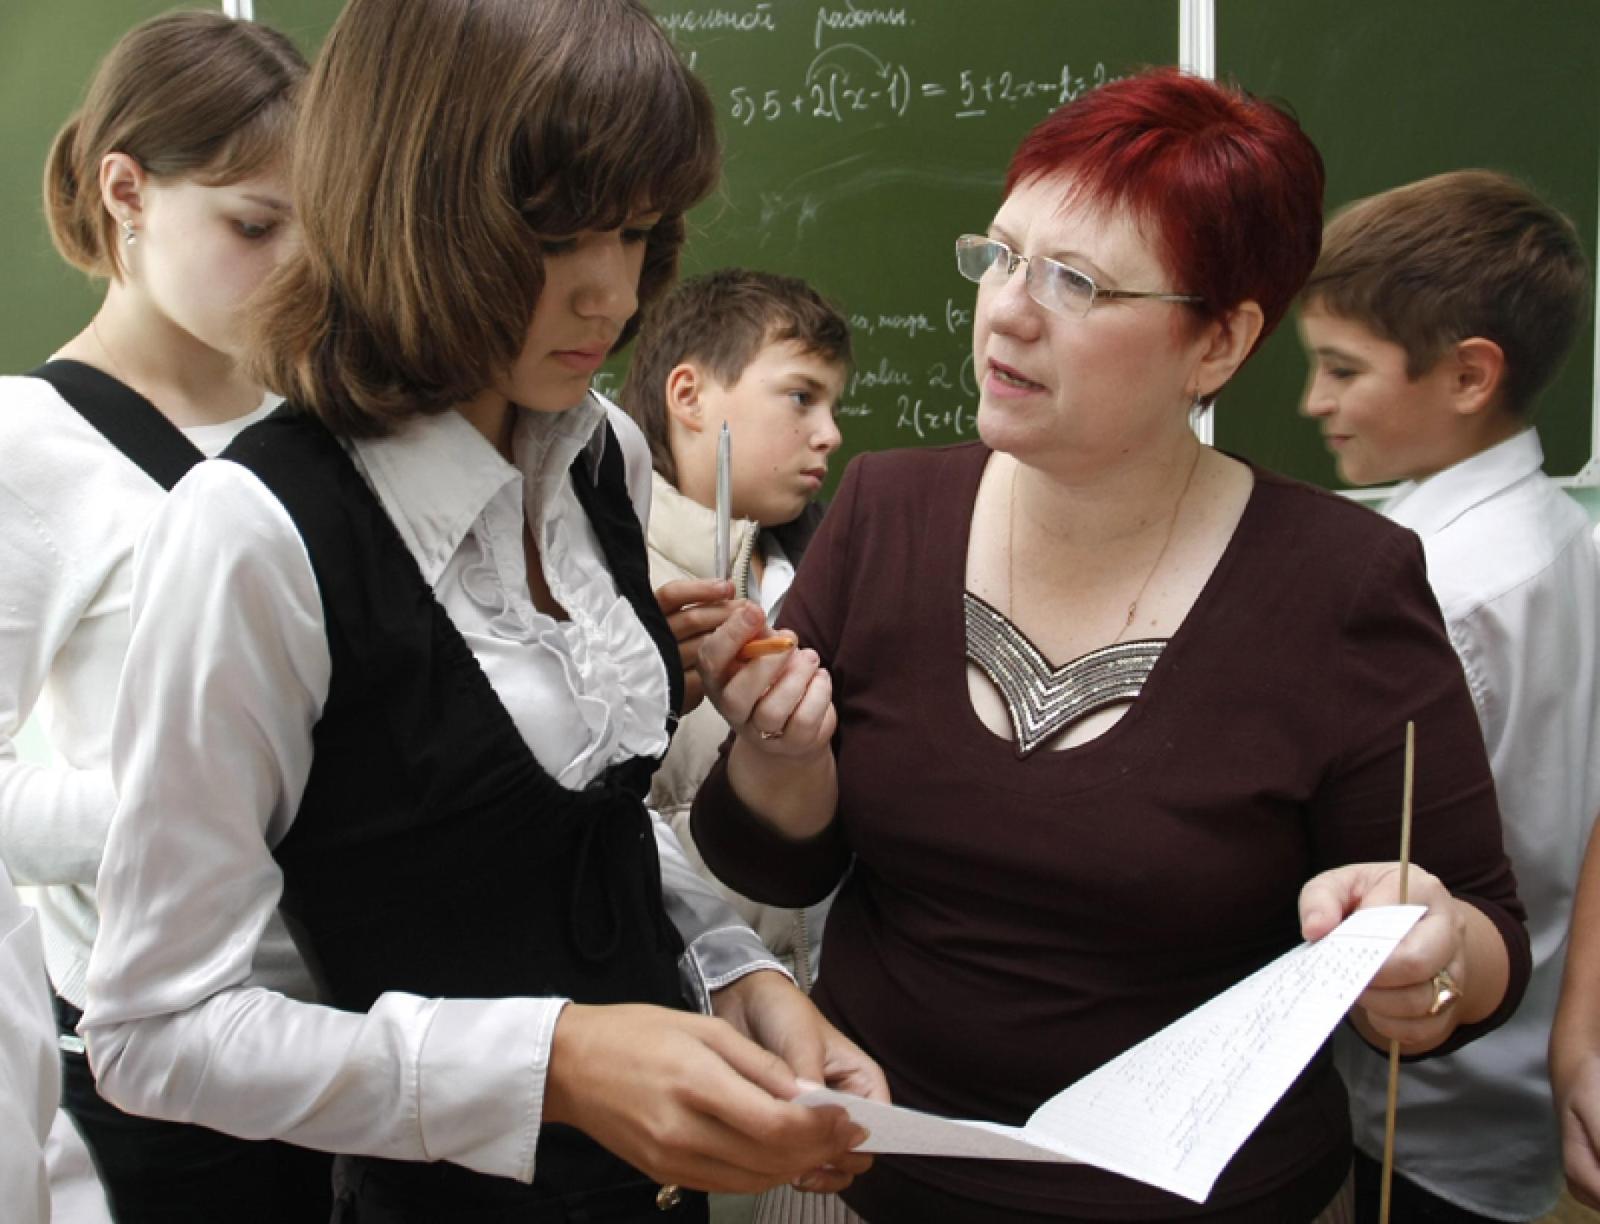 Документальный фильм  «Учитель для России» расскажет о неравенстве в образовании
